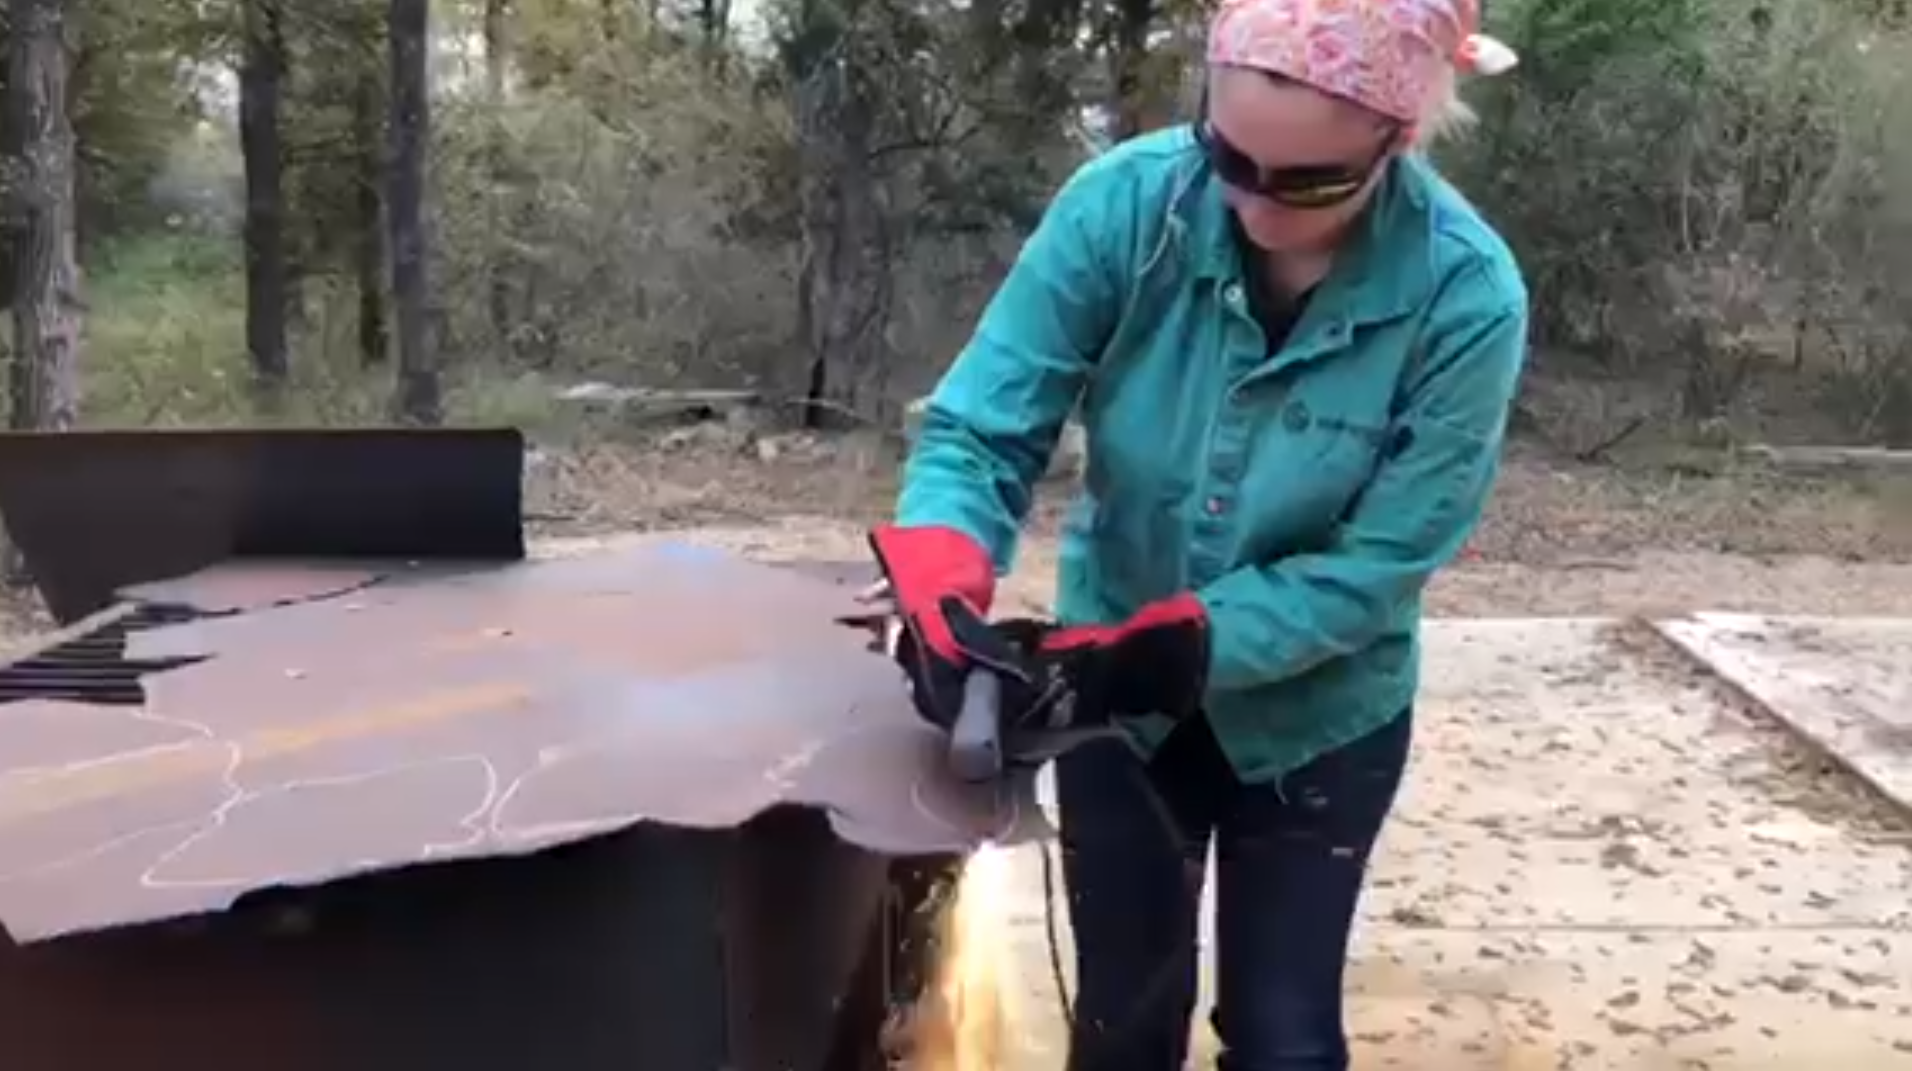 Sophia welding a piece of metal